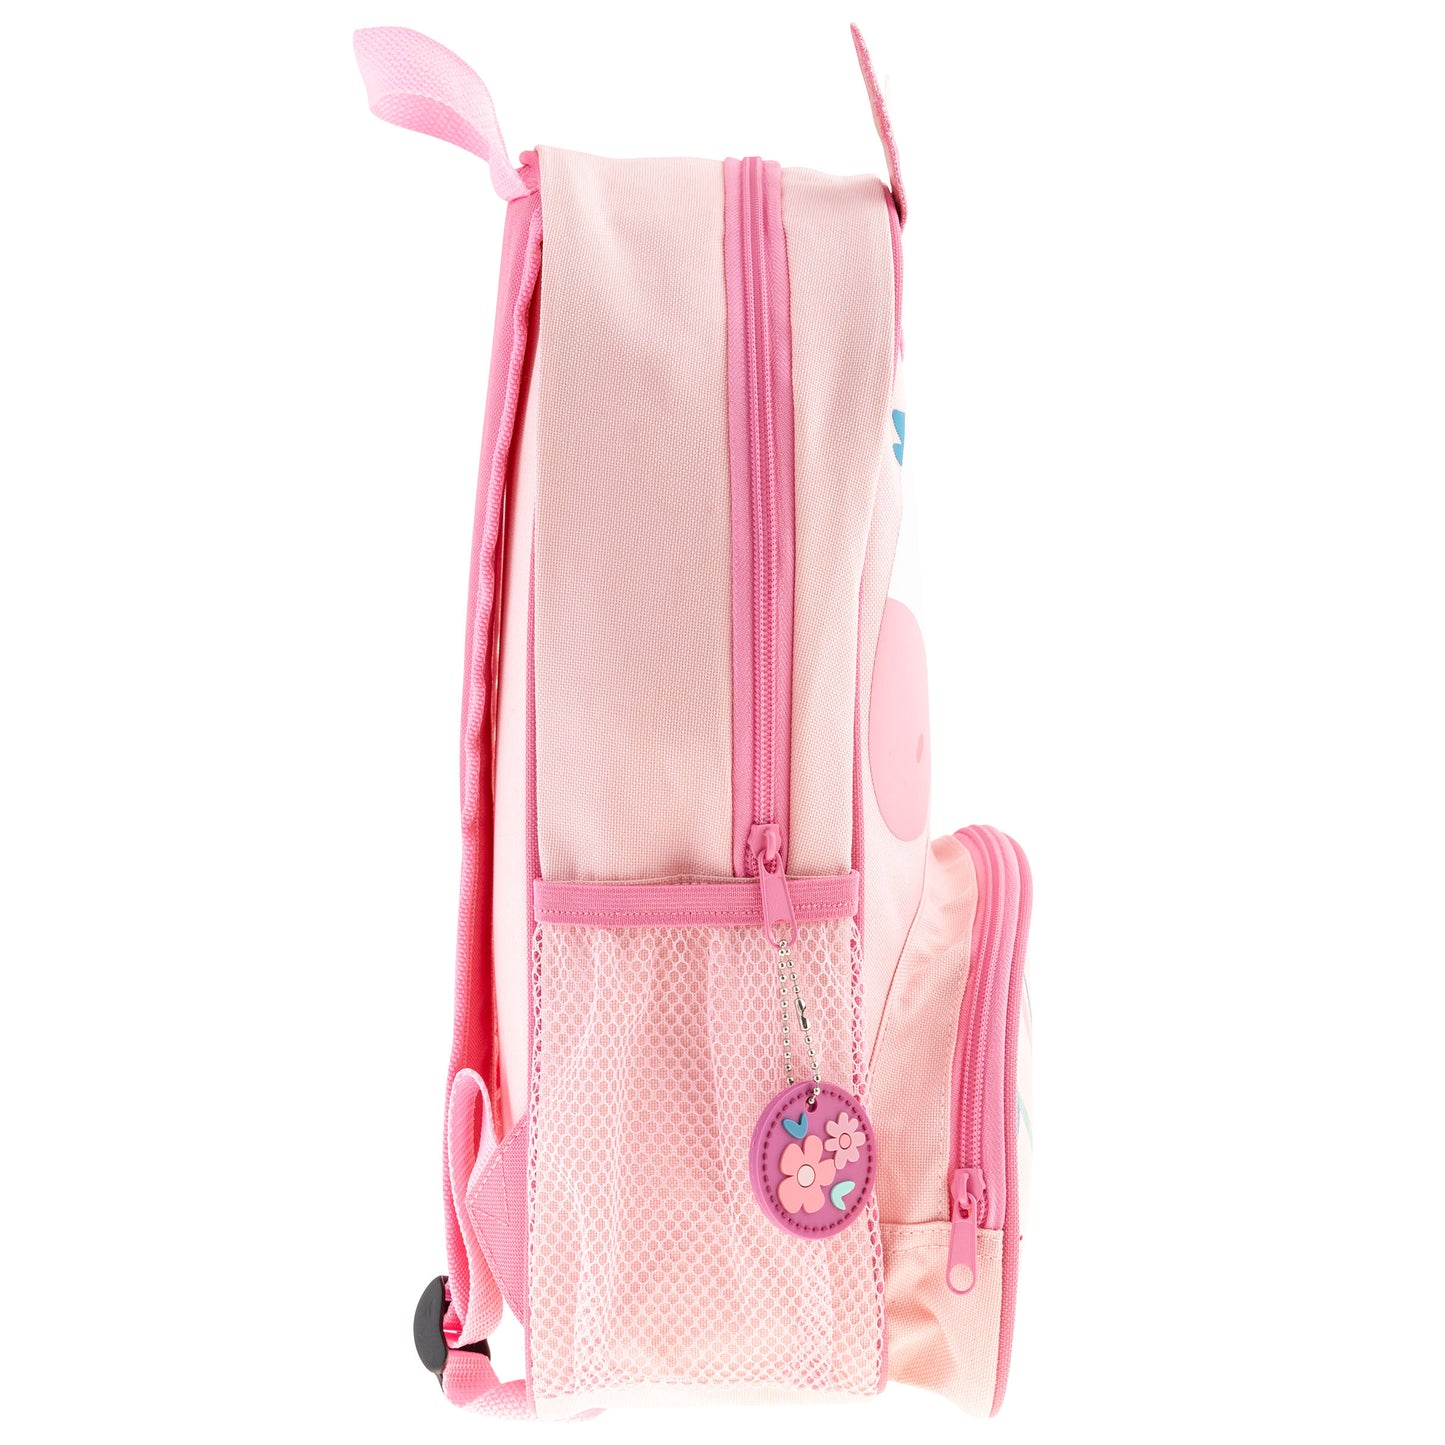 Unicorn Sidekick Backpack with Personalization